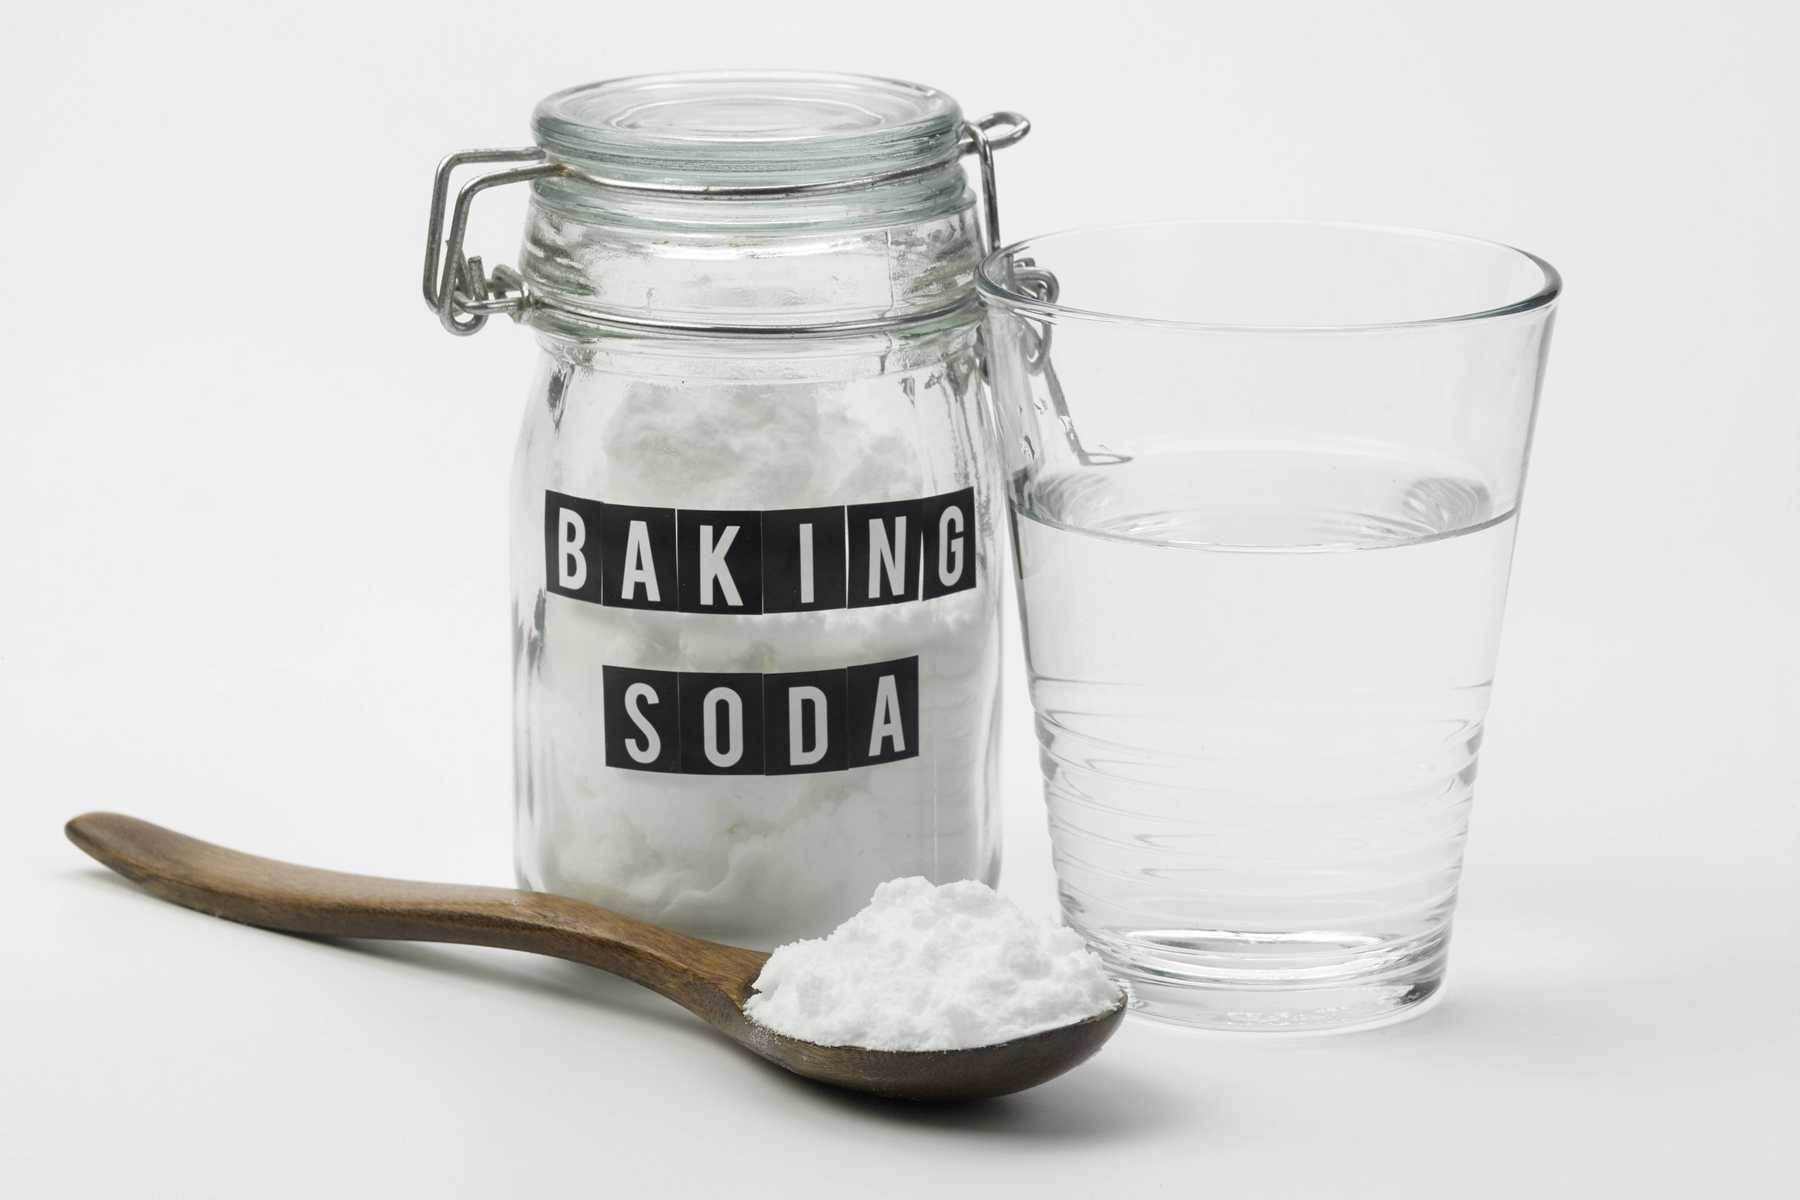 Baking soda là gì? 30 công dụng làm đẹp, tẩy rửa Baking soda